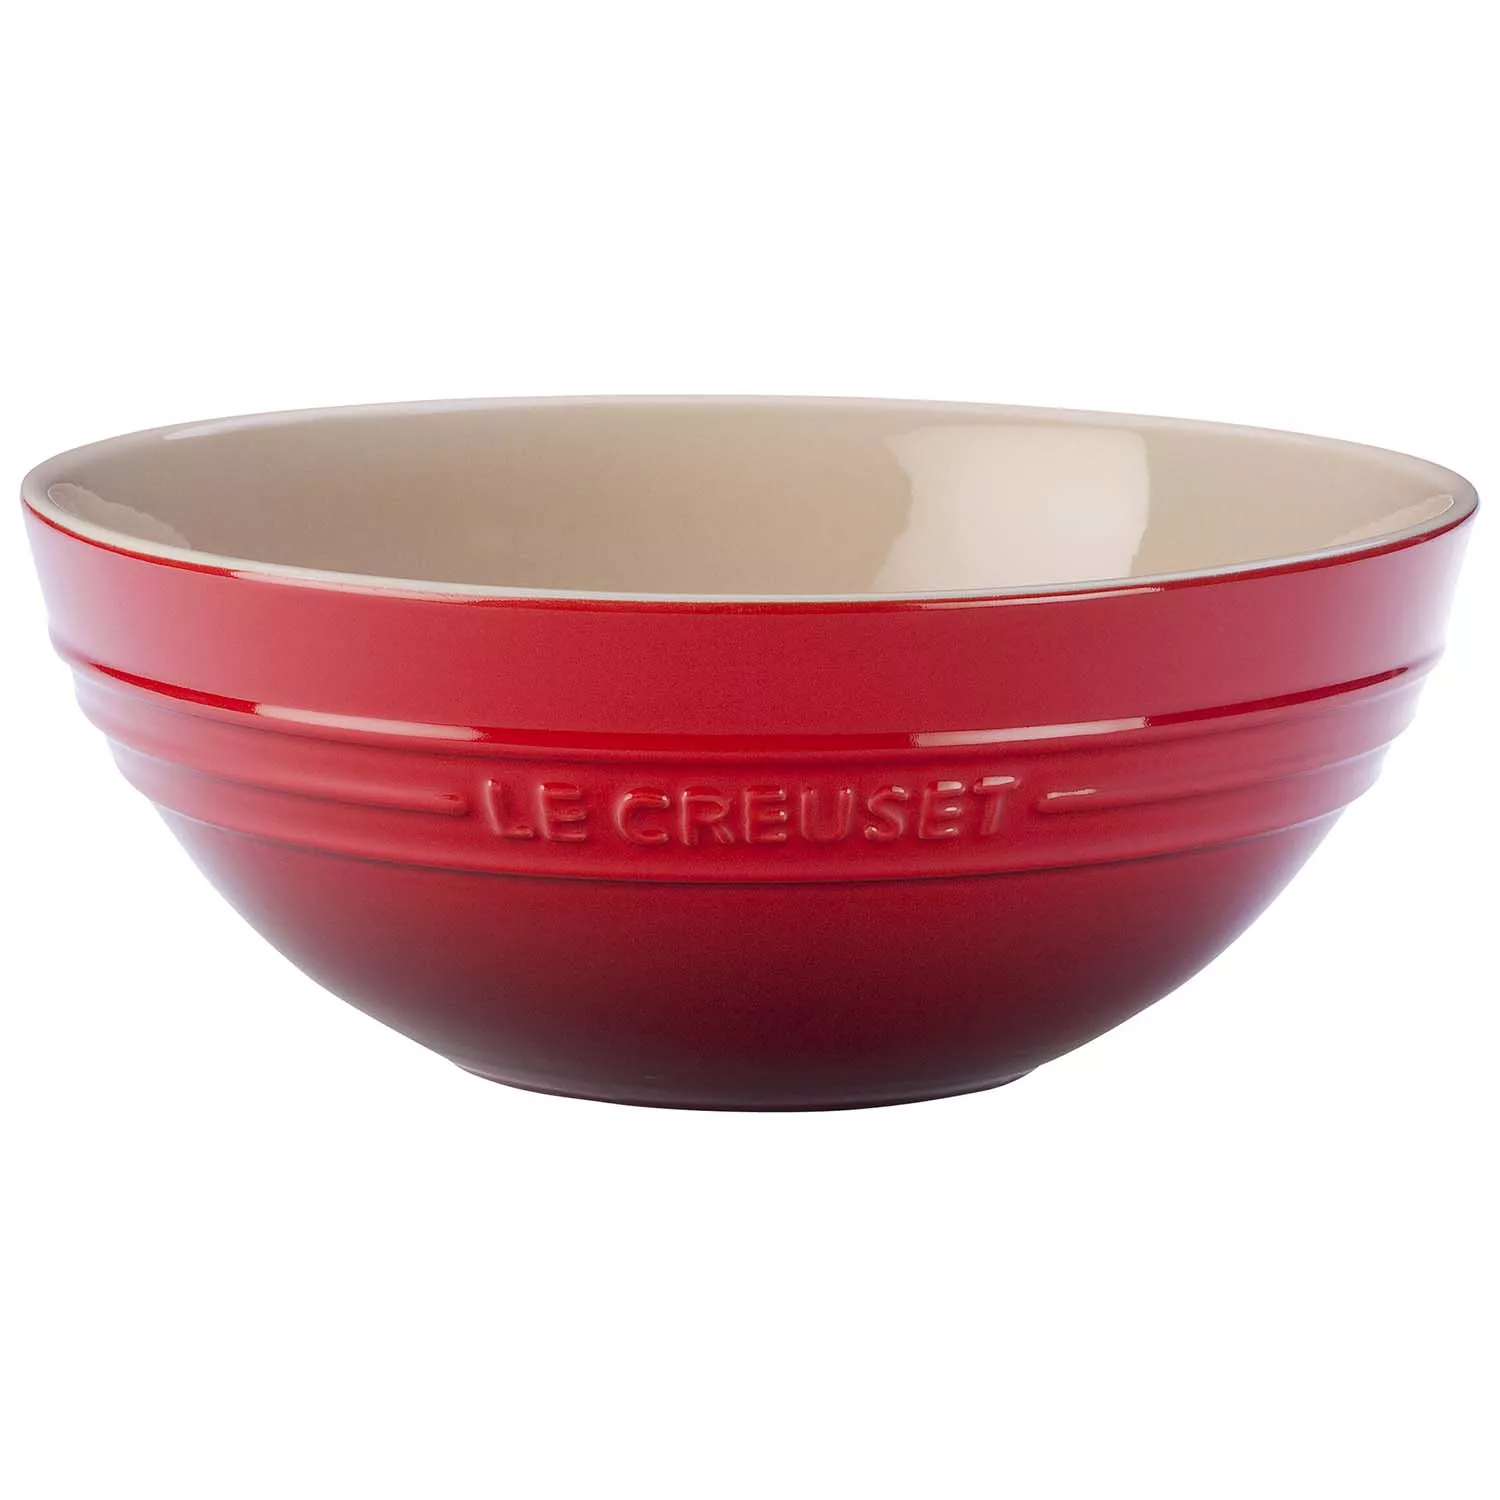 Photos - Salad Bowl / Serving Platter Le Creuset Serving Bowl 71019460060005 